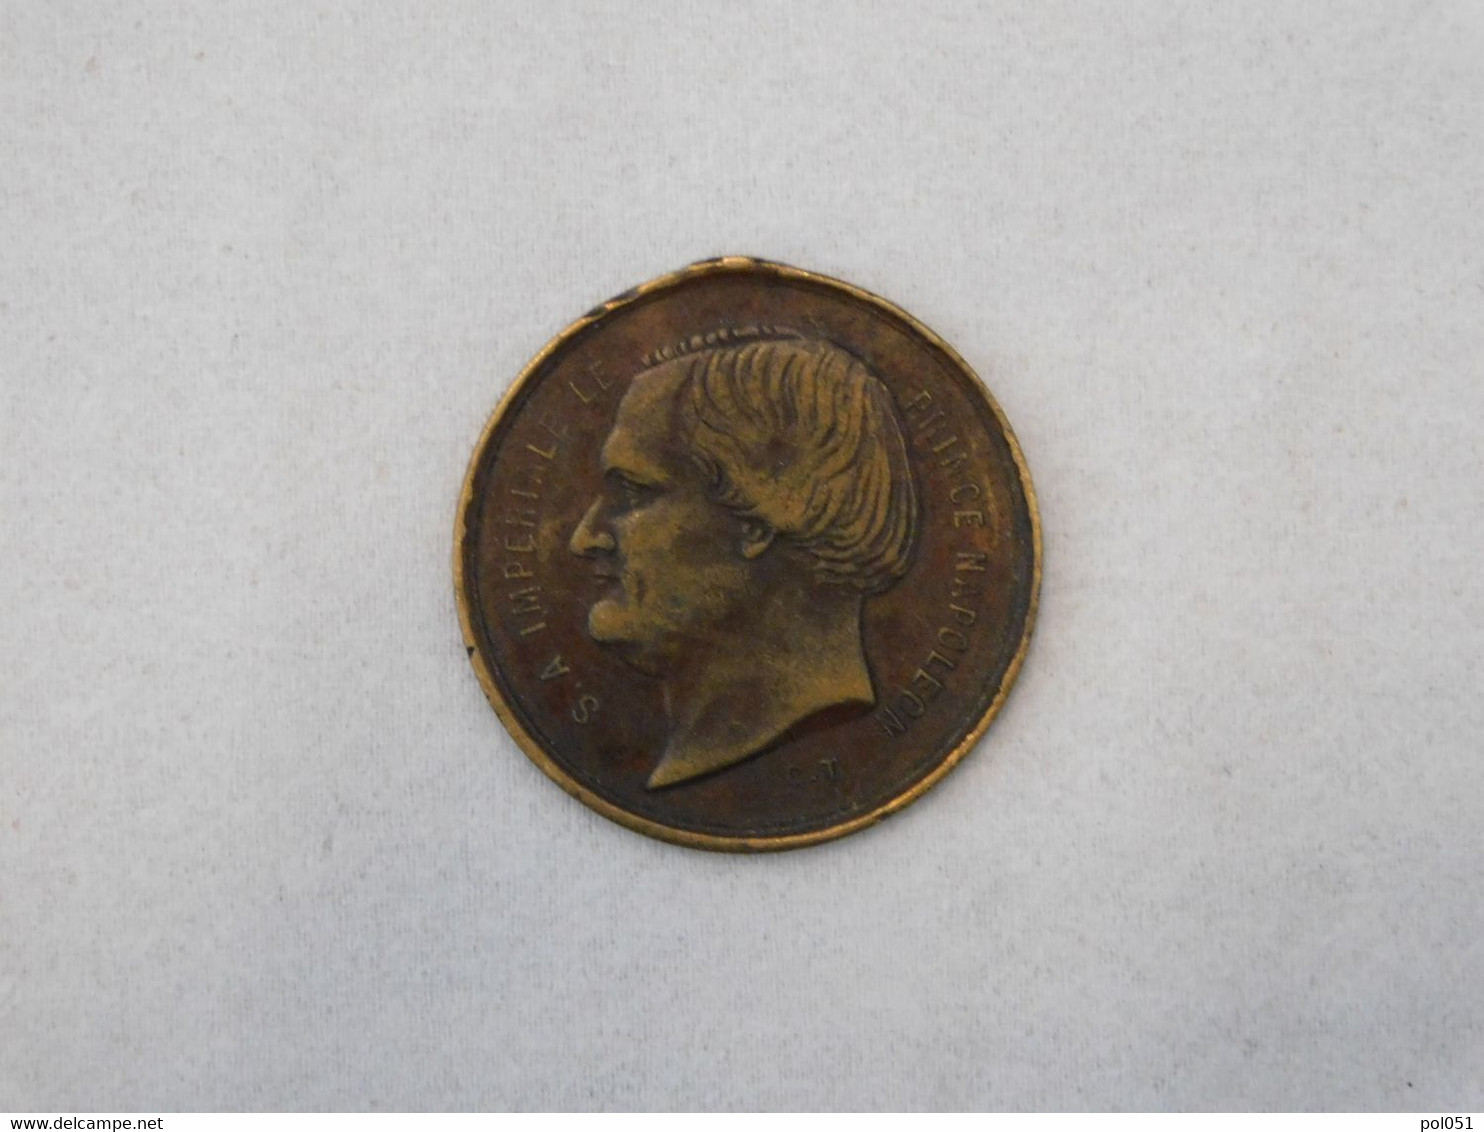 Medaille S.A. Imperiale La Princesse Clotilde Prince Napoleon - Professionnels / De Société